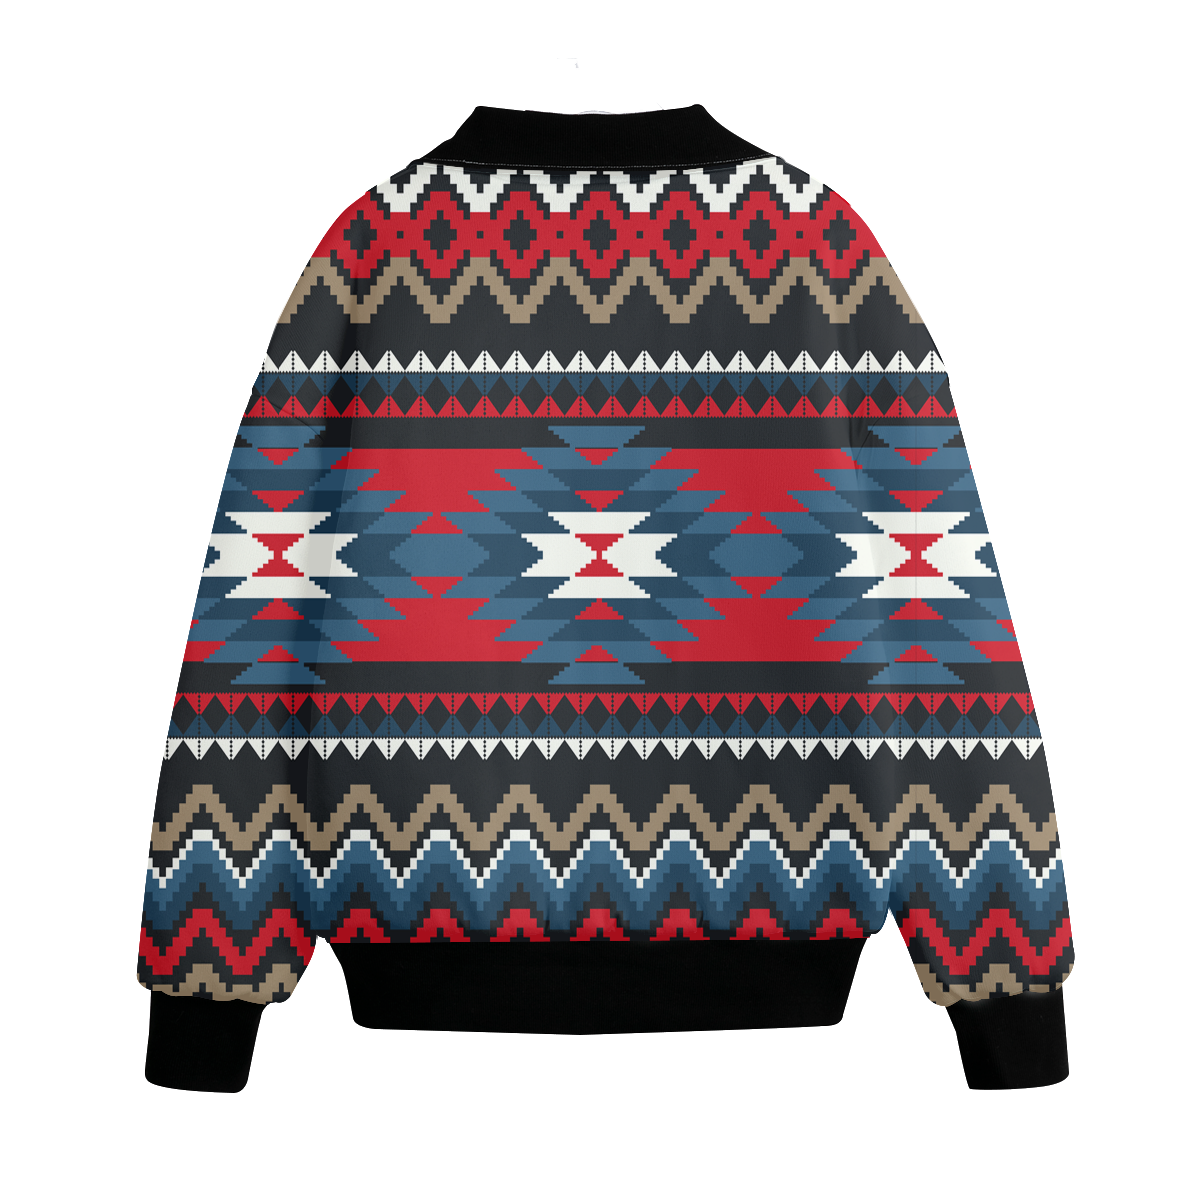 Powwow Storegb nat00529 pattern native american unisex knitted fleece lapel outwear